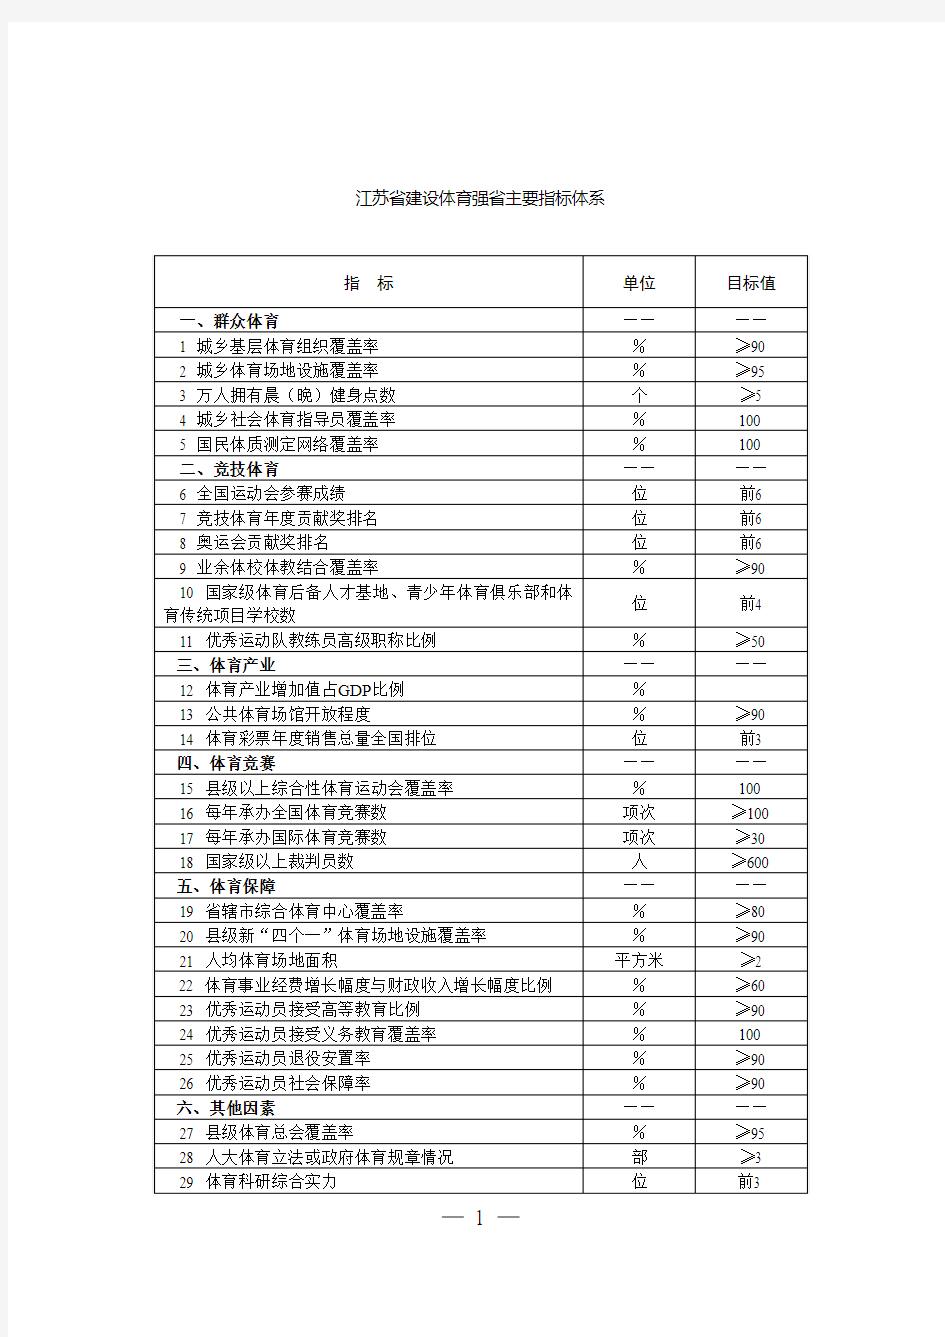 江苏省建设体育强省主要指标体系